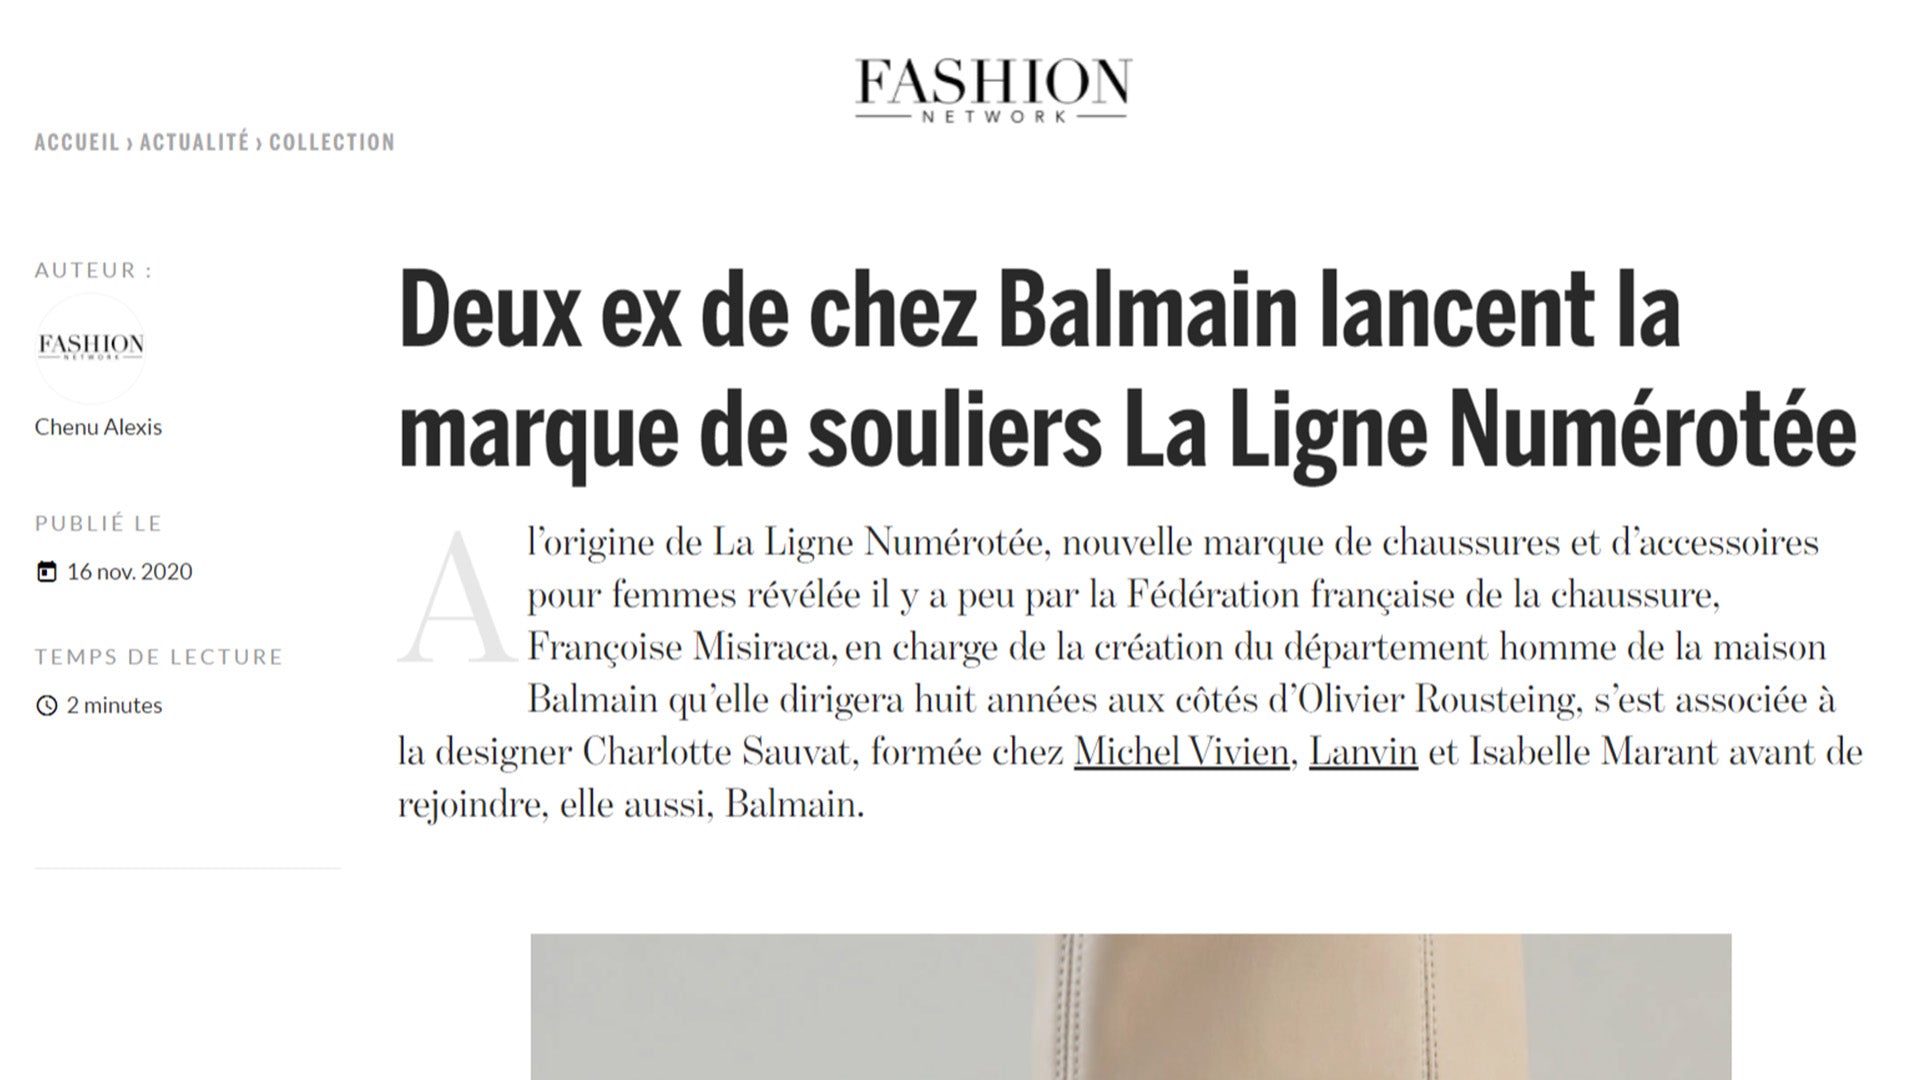 Deux ex de chez Balmain lancent la marque de souliers La Ligne Numérotée -  Fashion Network, 16 novembre 2020 